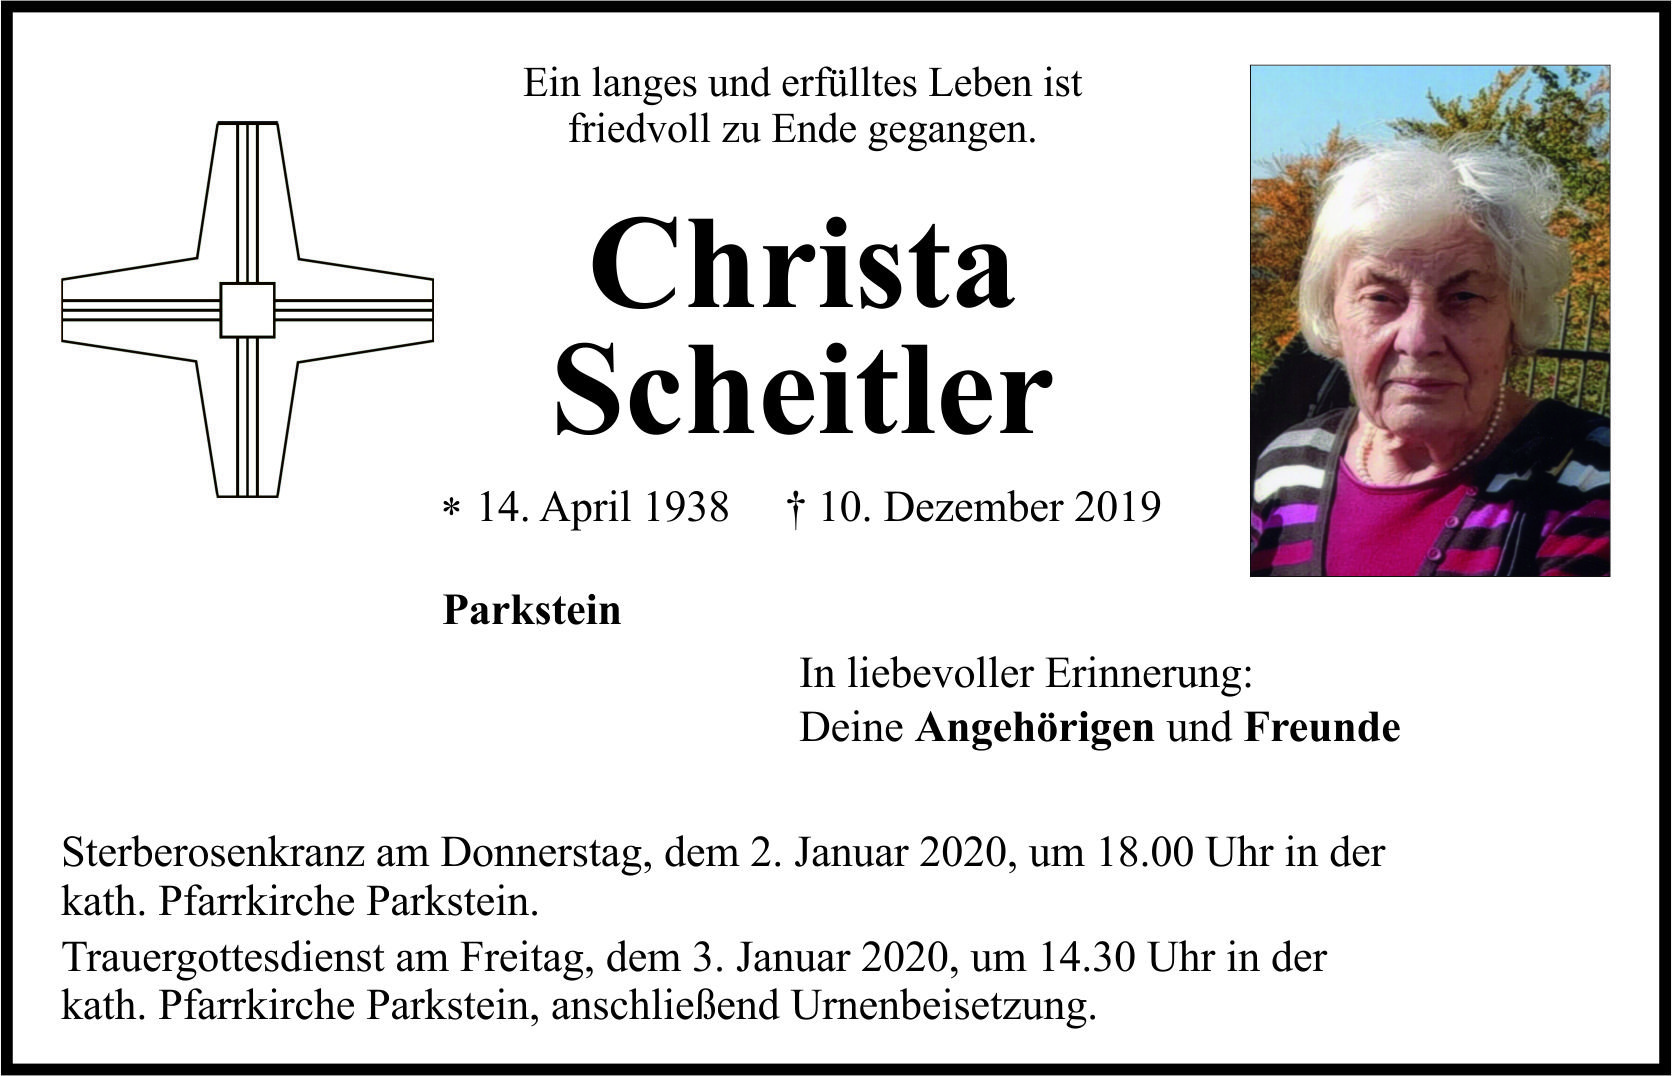 Traueranzeige Christa Scheitler, Parkstein